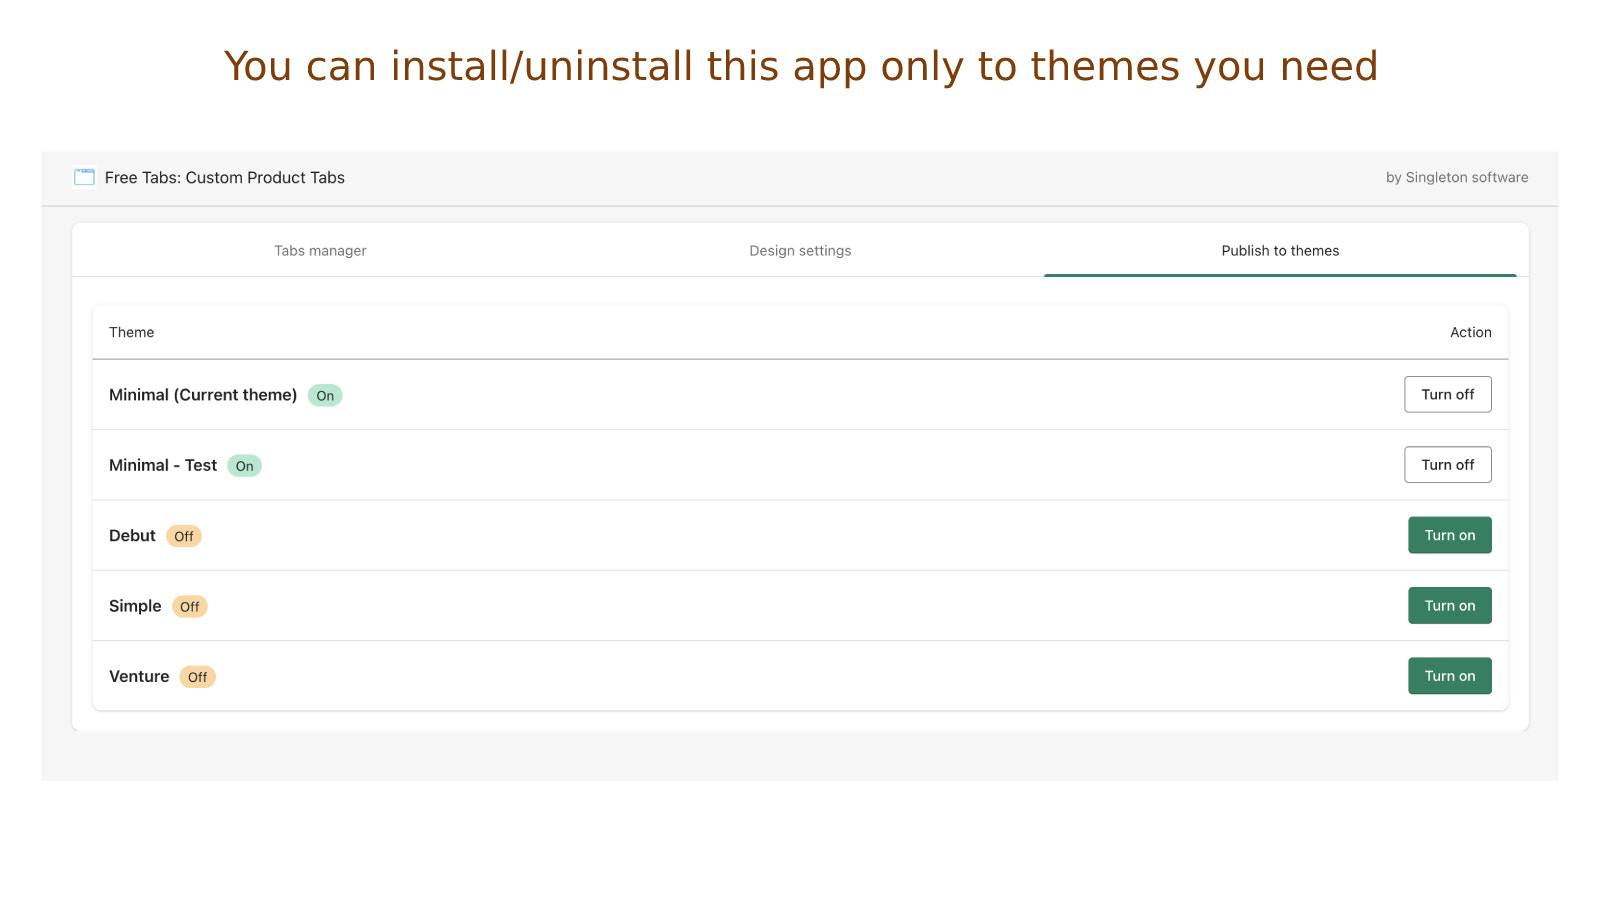 Sie können die App nur für die benötigten Themes installieren/deinstallieren